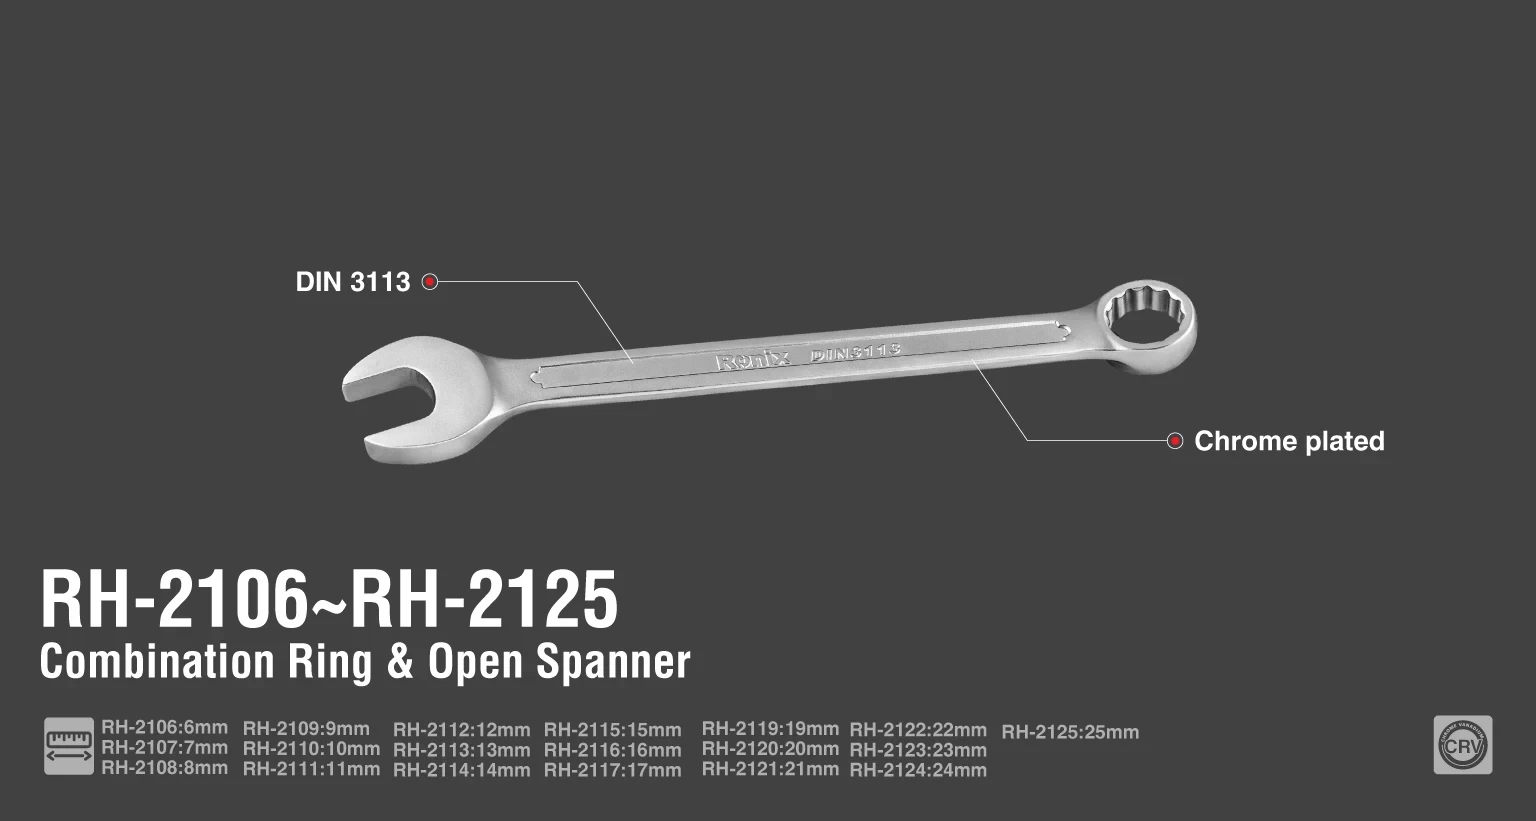 RH-2124 kомбинационное кольцо и открытый гаечный ключ _details